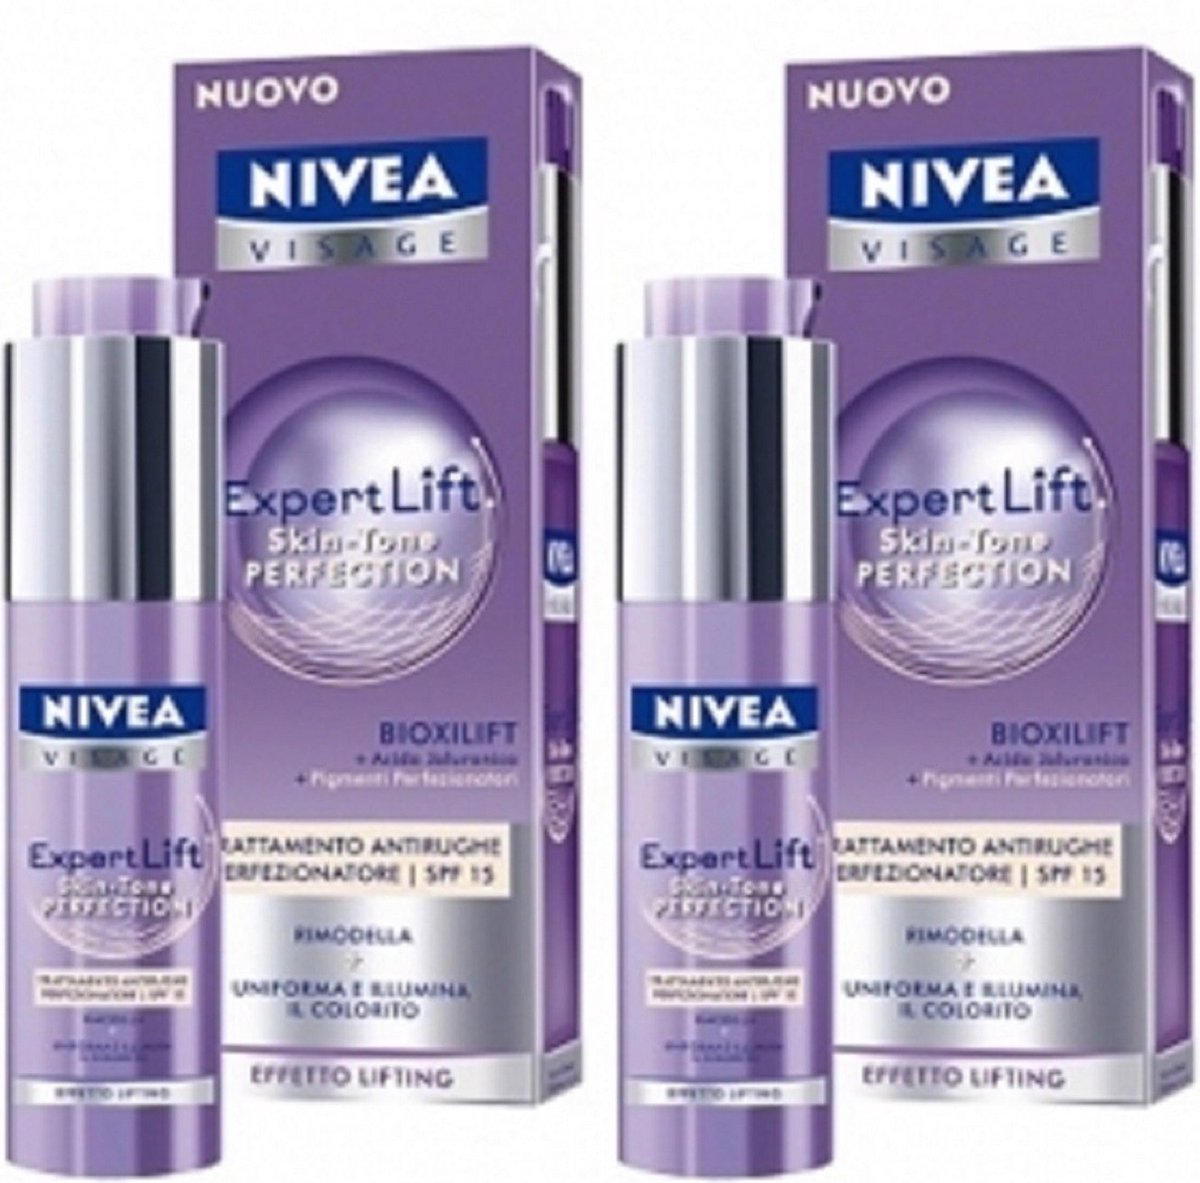 Nivea Visage Expert Lift Skin Tone Perfection 50ml Anti-Wrinkle Treatment(2  STUKS) | bol.com